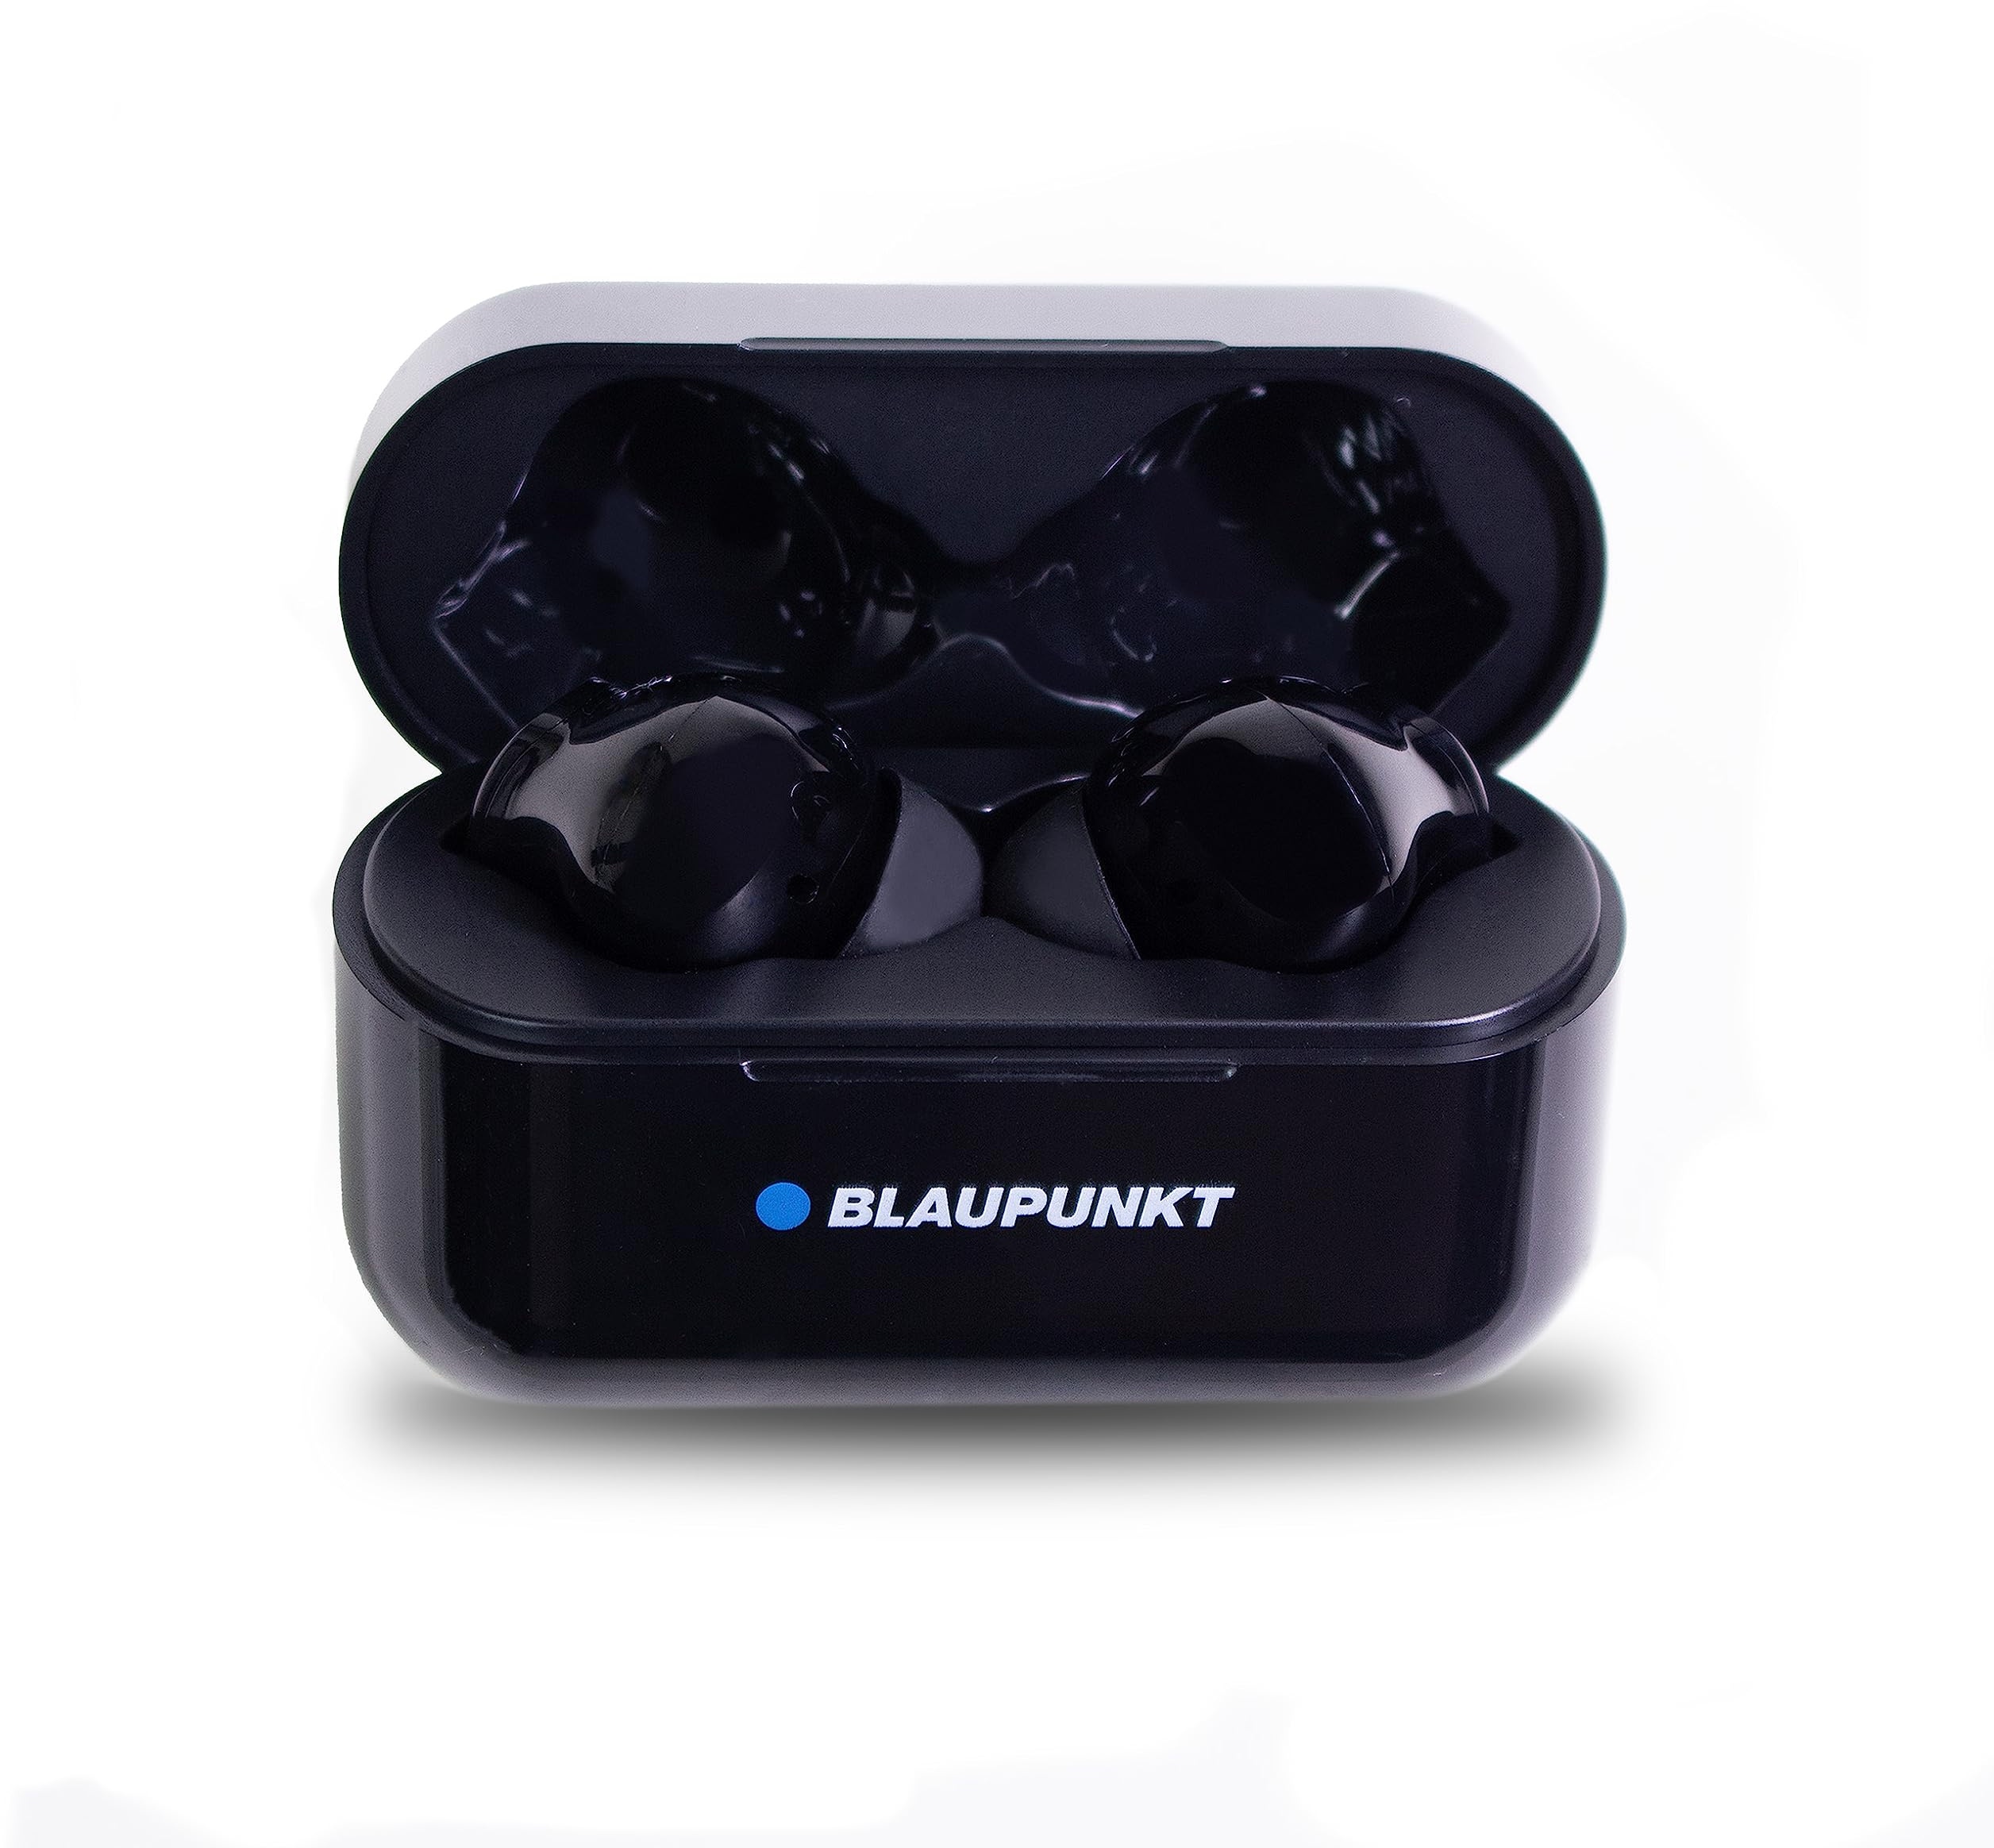 Blaupunkt TWS 30 In-Ear Kopfhörer mit True Wireless Stereo - Bluetooth Kopfhörer mit Touch-Control-Technologie, ideal geeignet für Sport, Perfekter Halt, USB-C Anschluss, mit Ladeschale, Schwarz